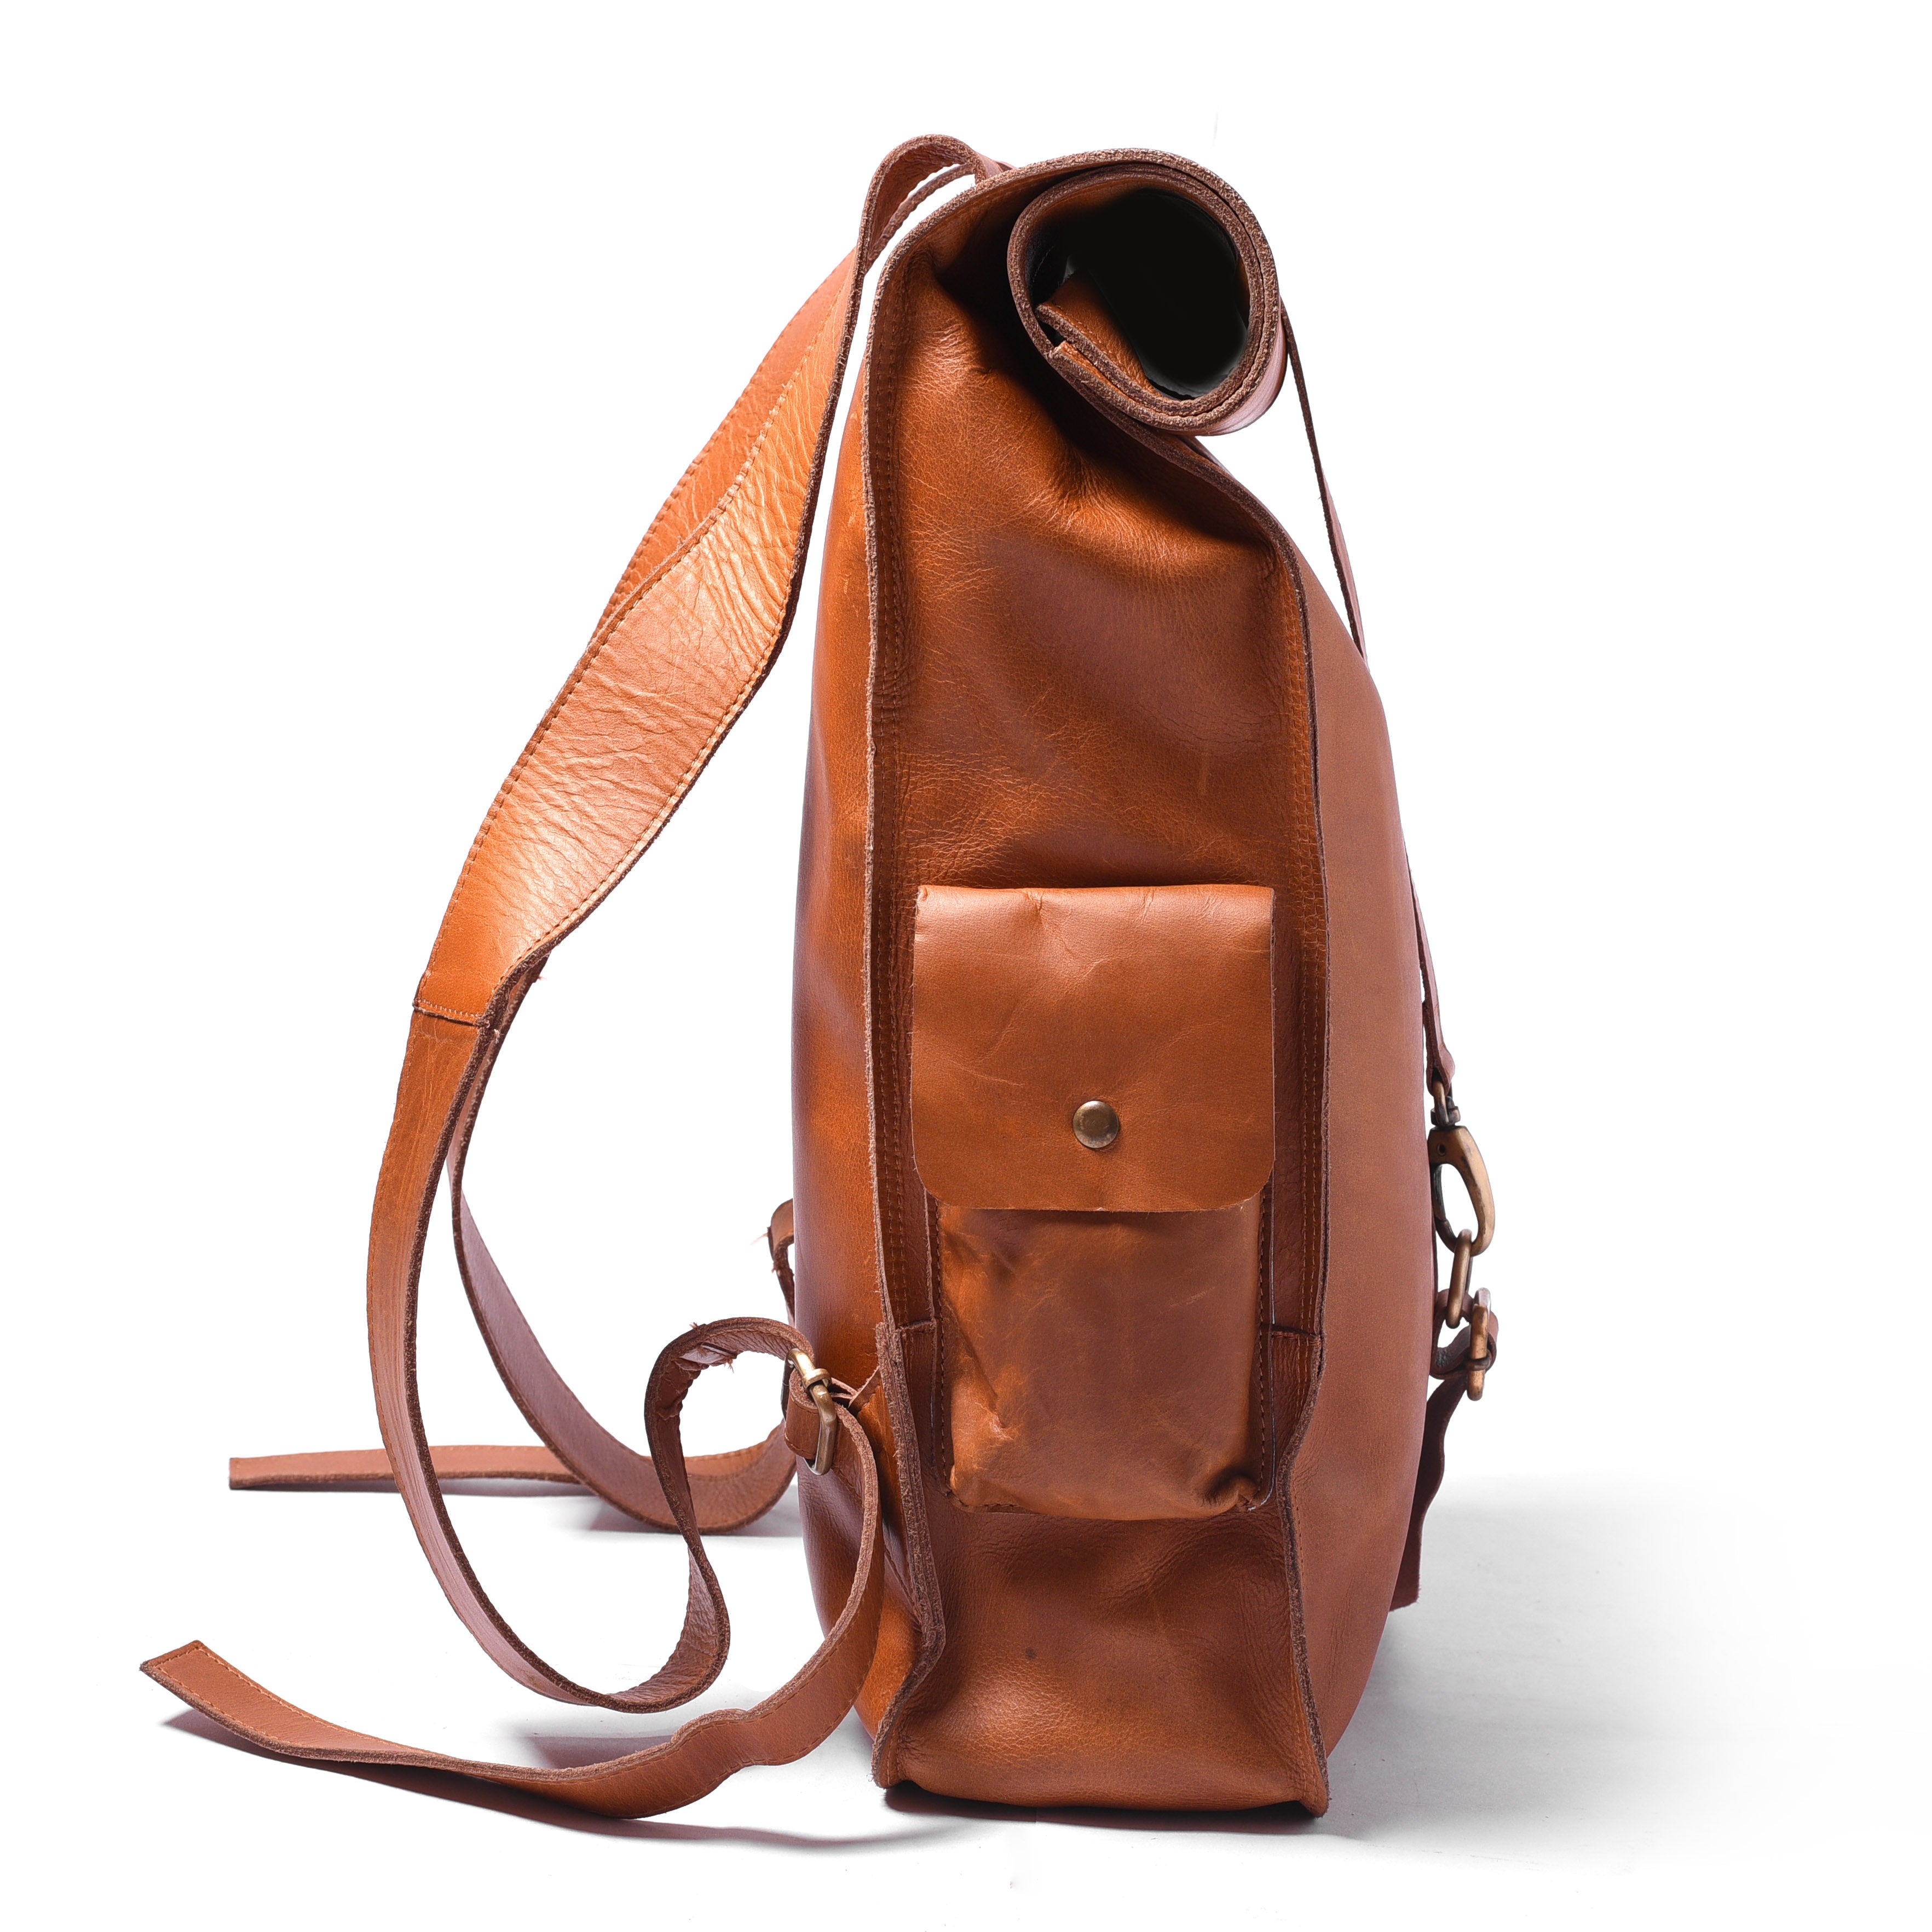 DIY Bag Kit #004 Leather Rucksack / Leather Backpack